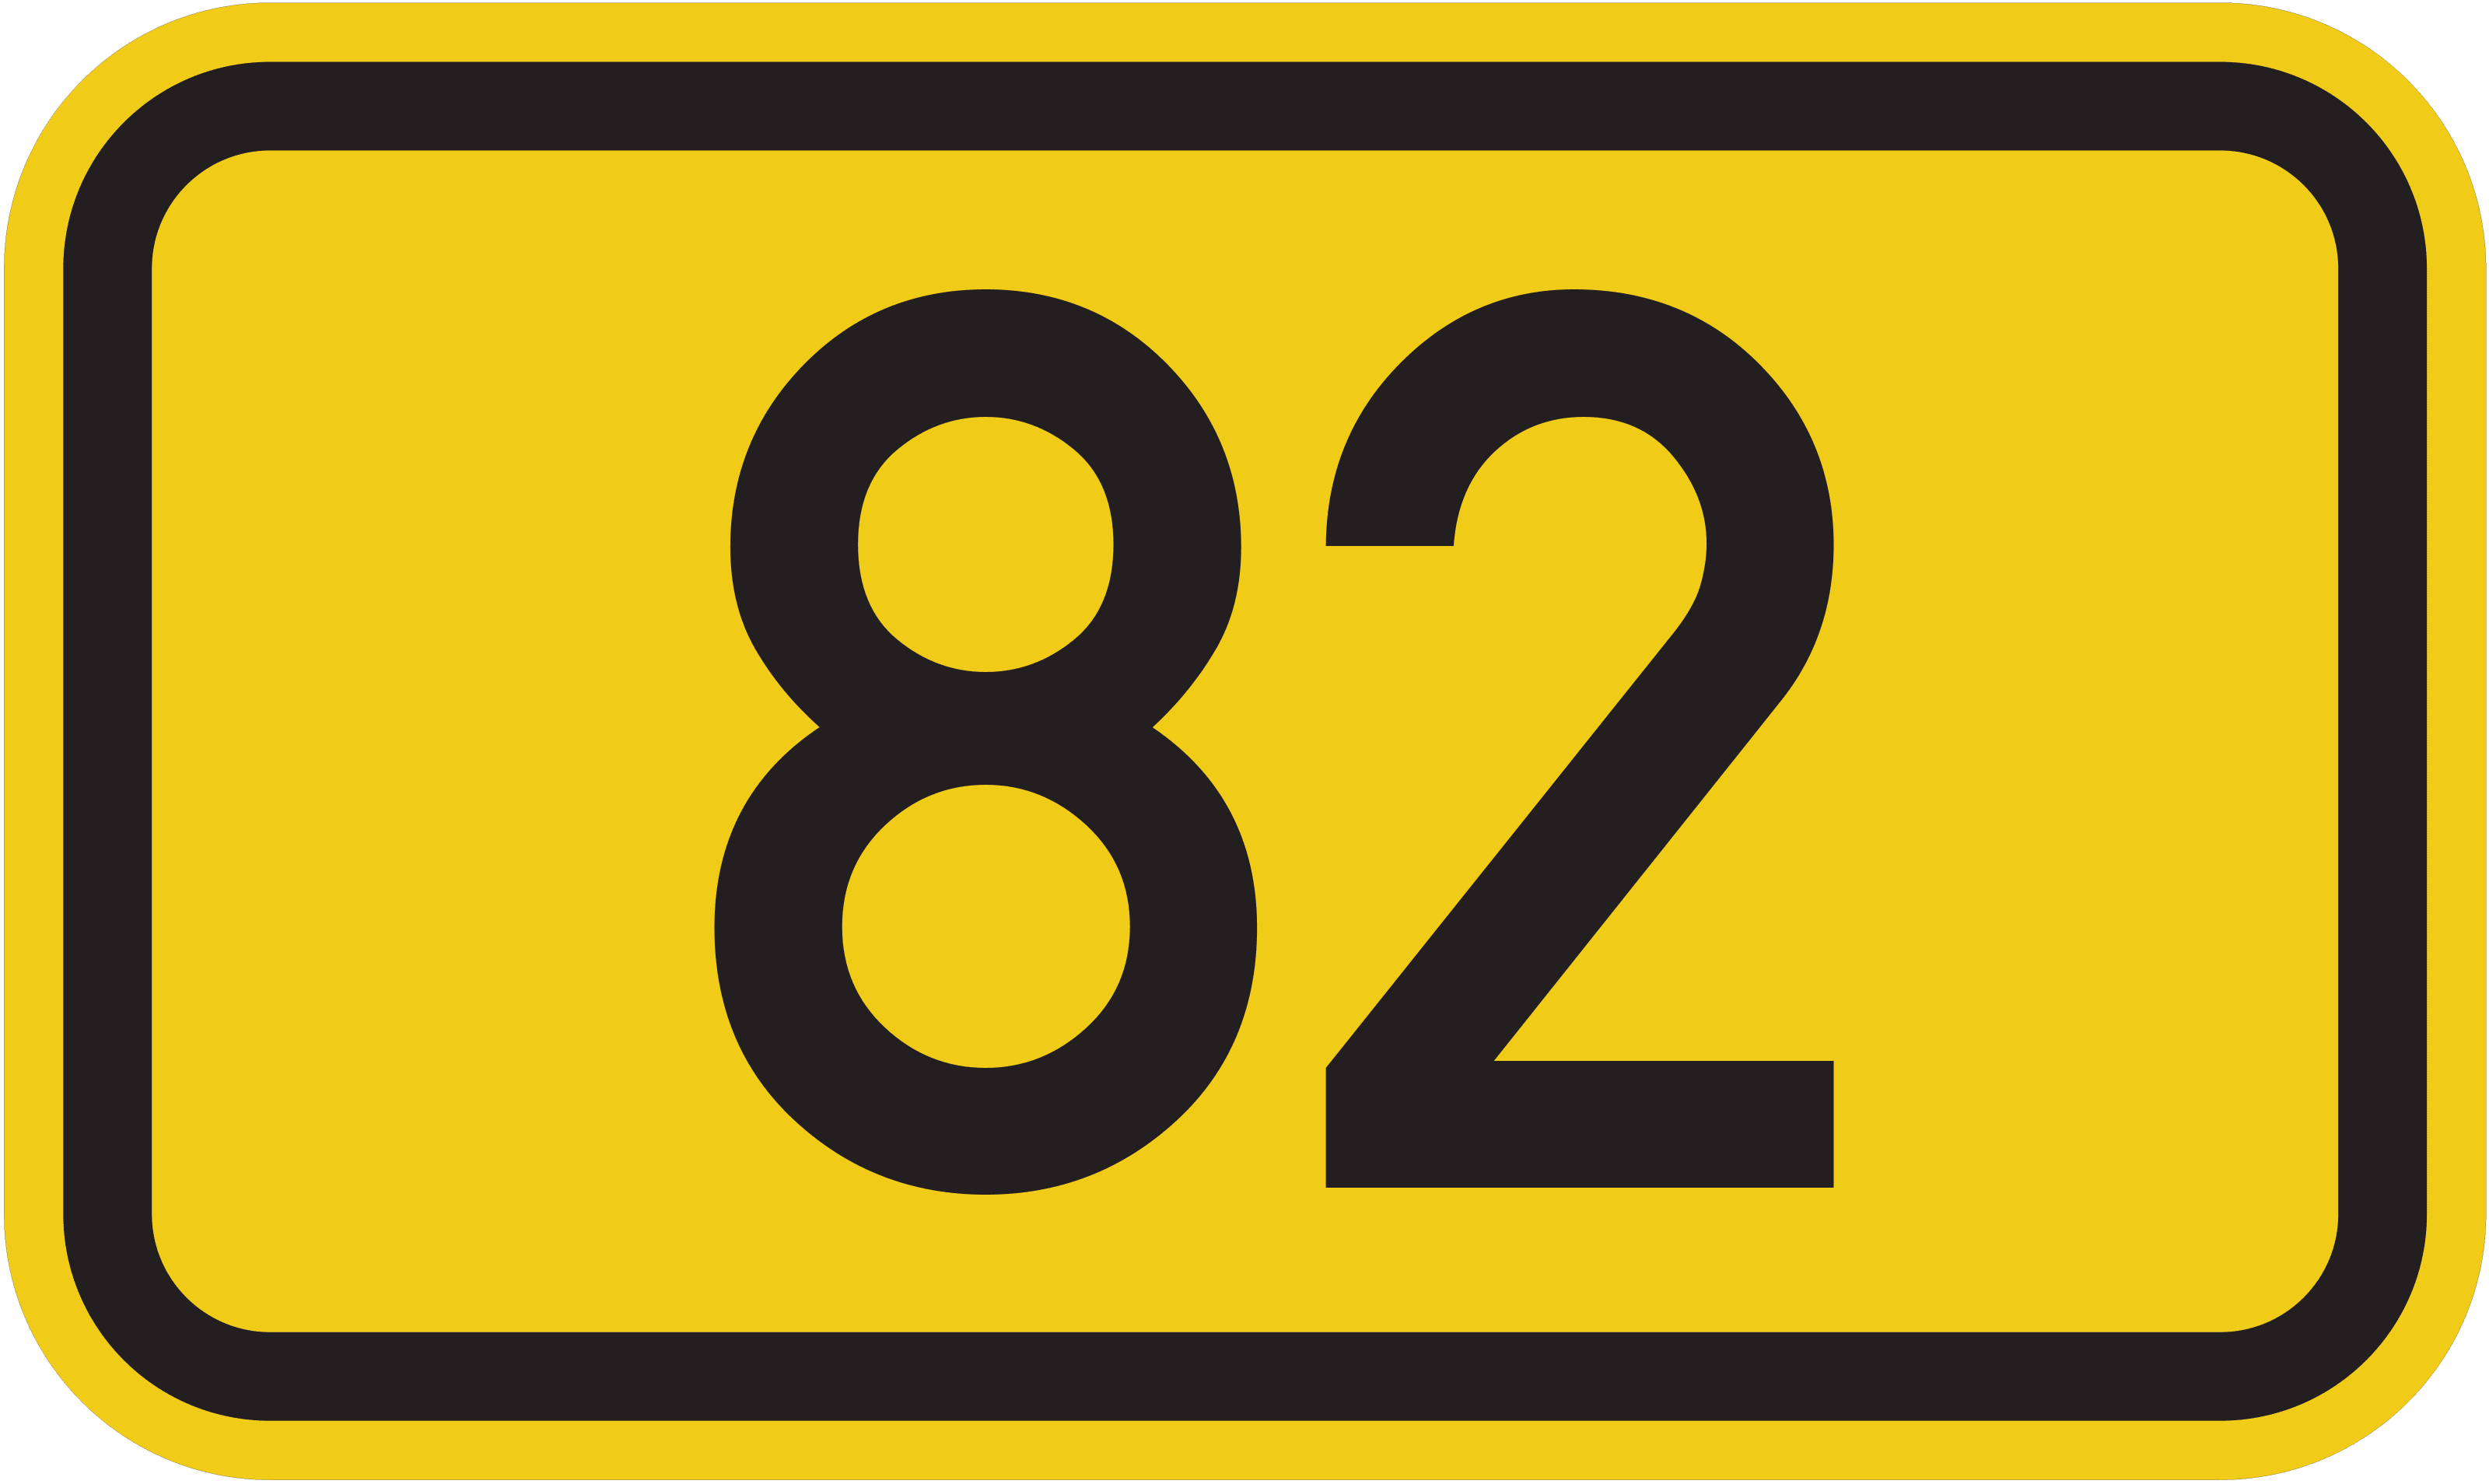 Bundesstraße B 82